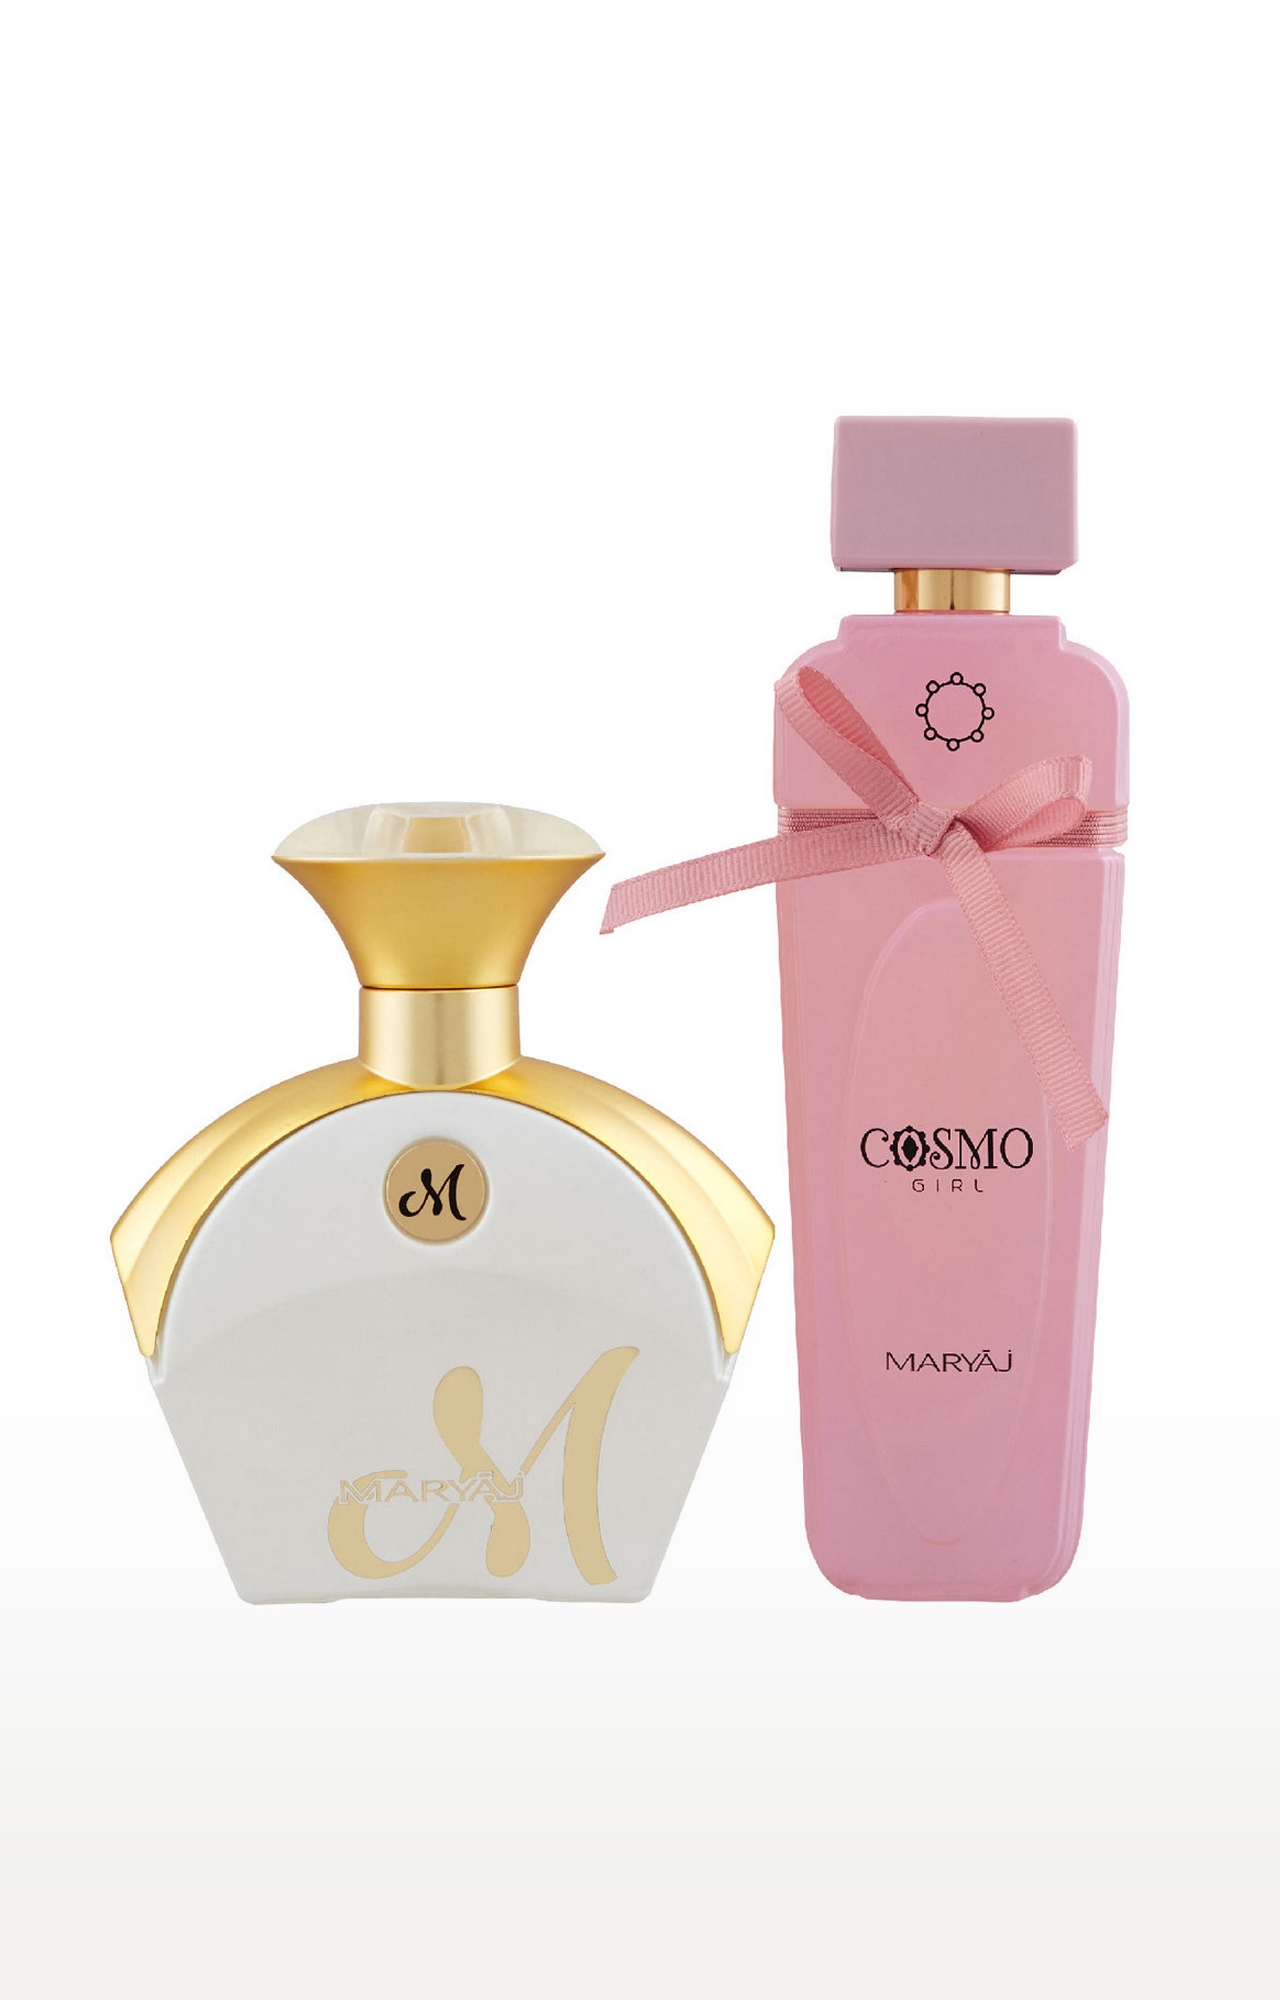 Maryaj M White for Her Eau De Parfum Fruity Perfume 90ml for Women and Maryaj Cosmo Girl Eau De Parfum Perfume 100ml for WoMen